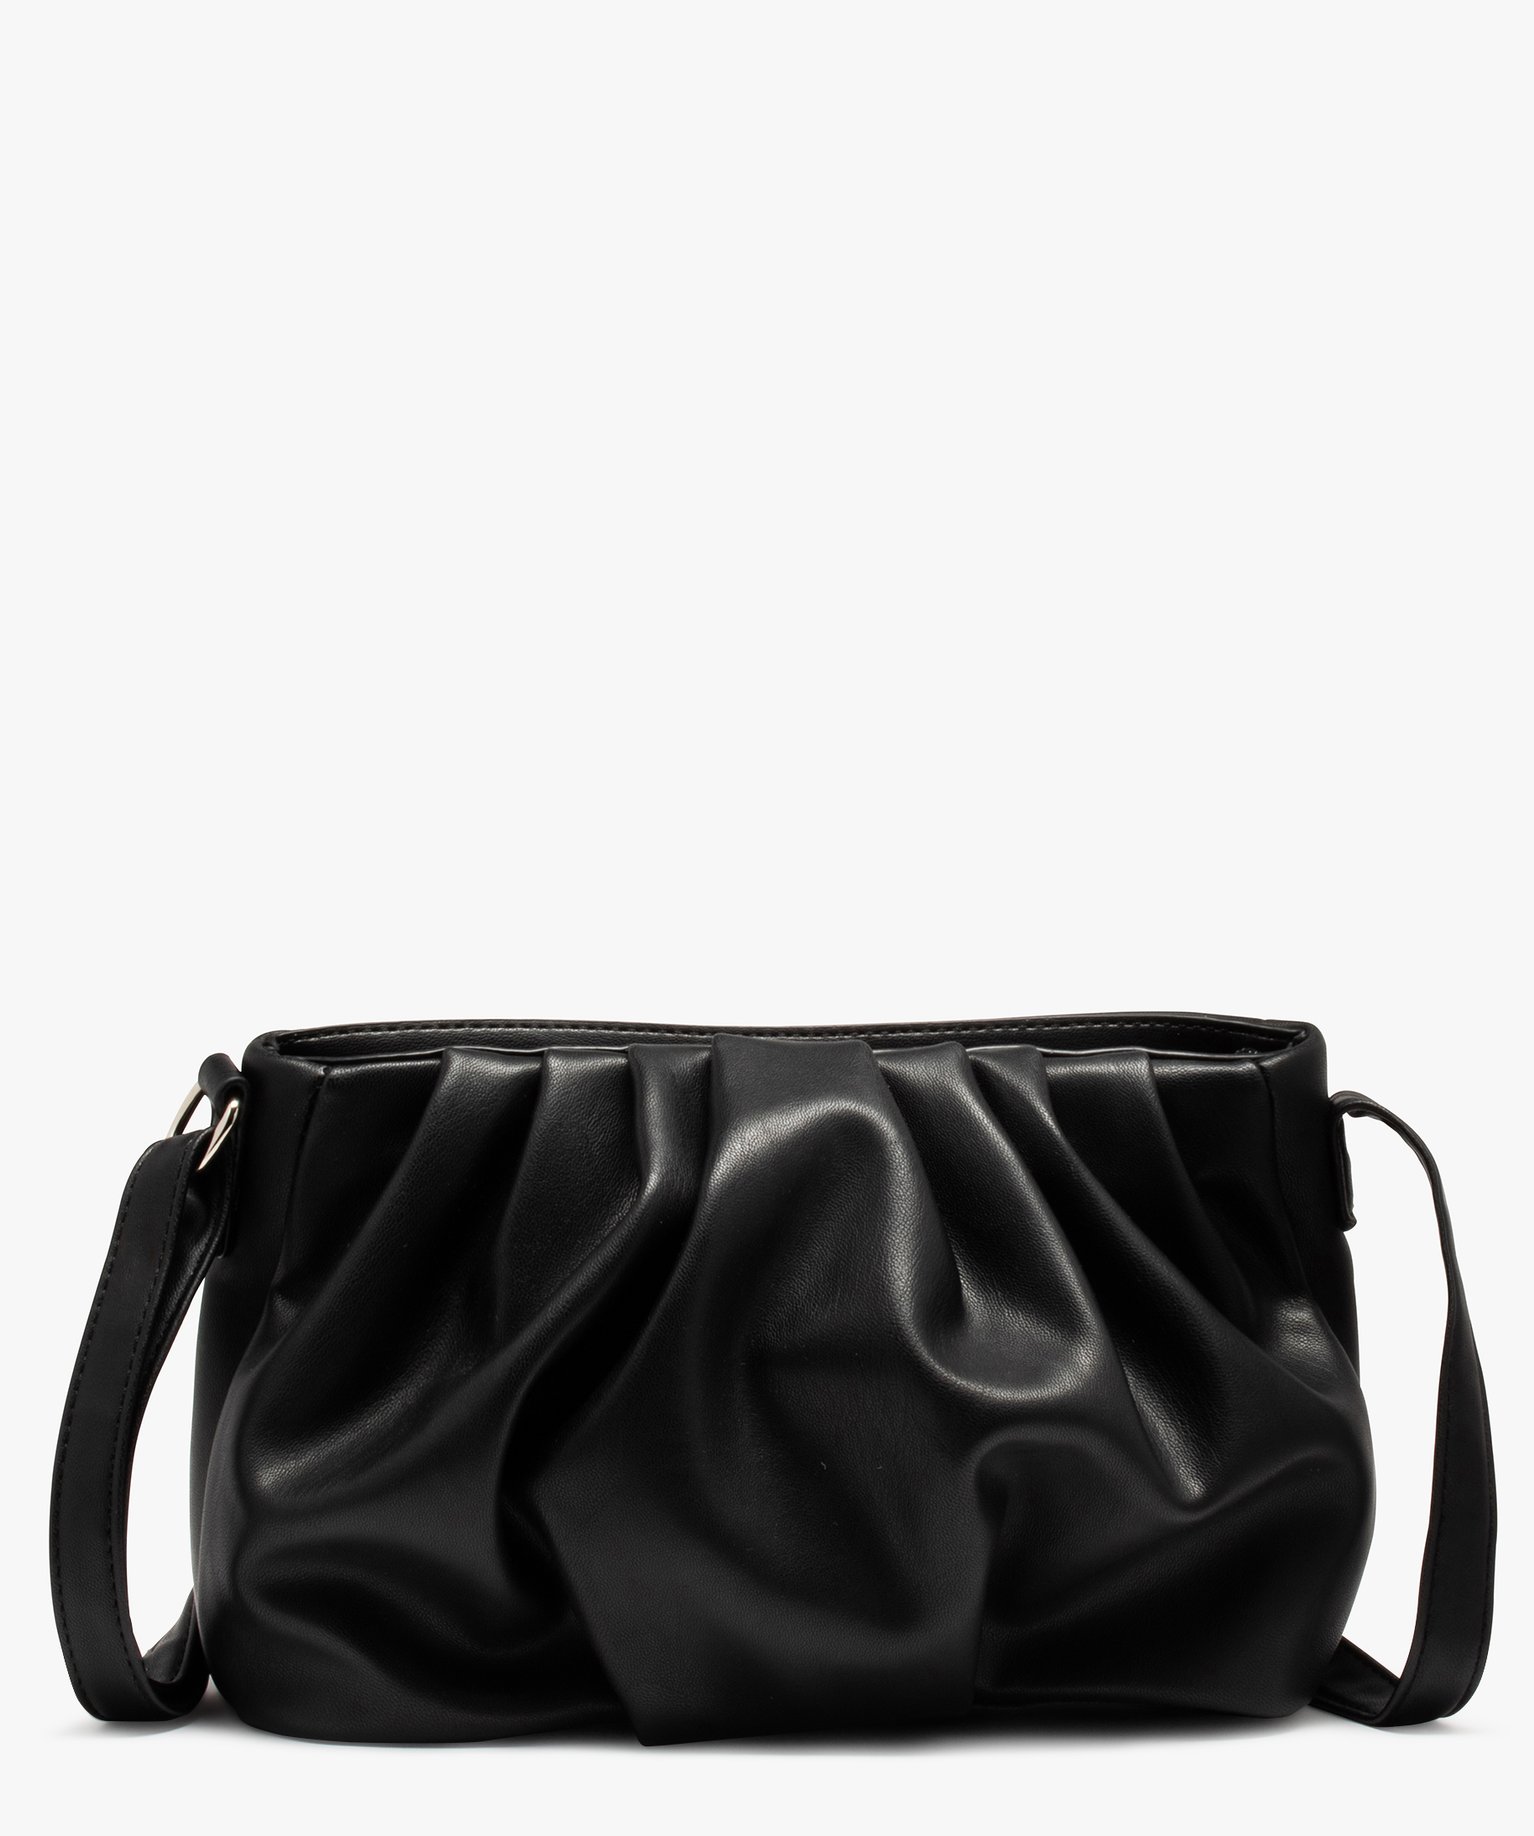 sac femme avec devant aspect drape noir sacs bandouliere